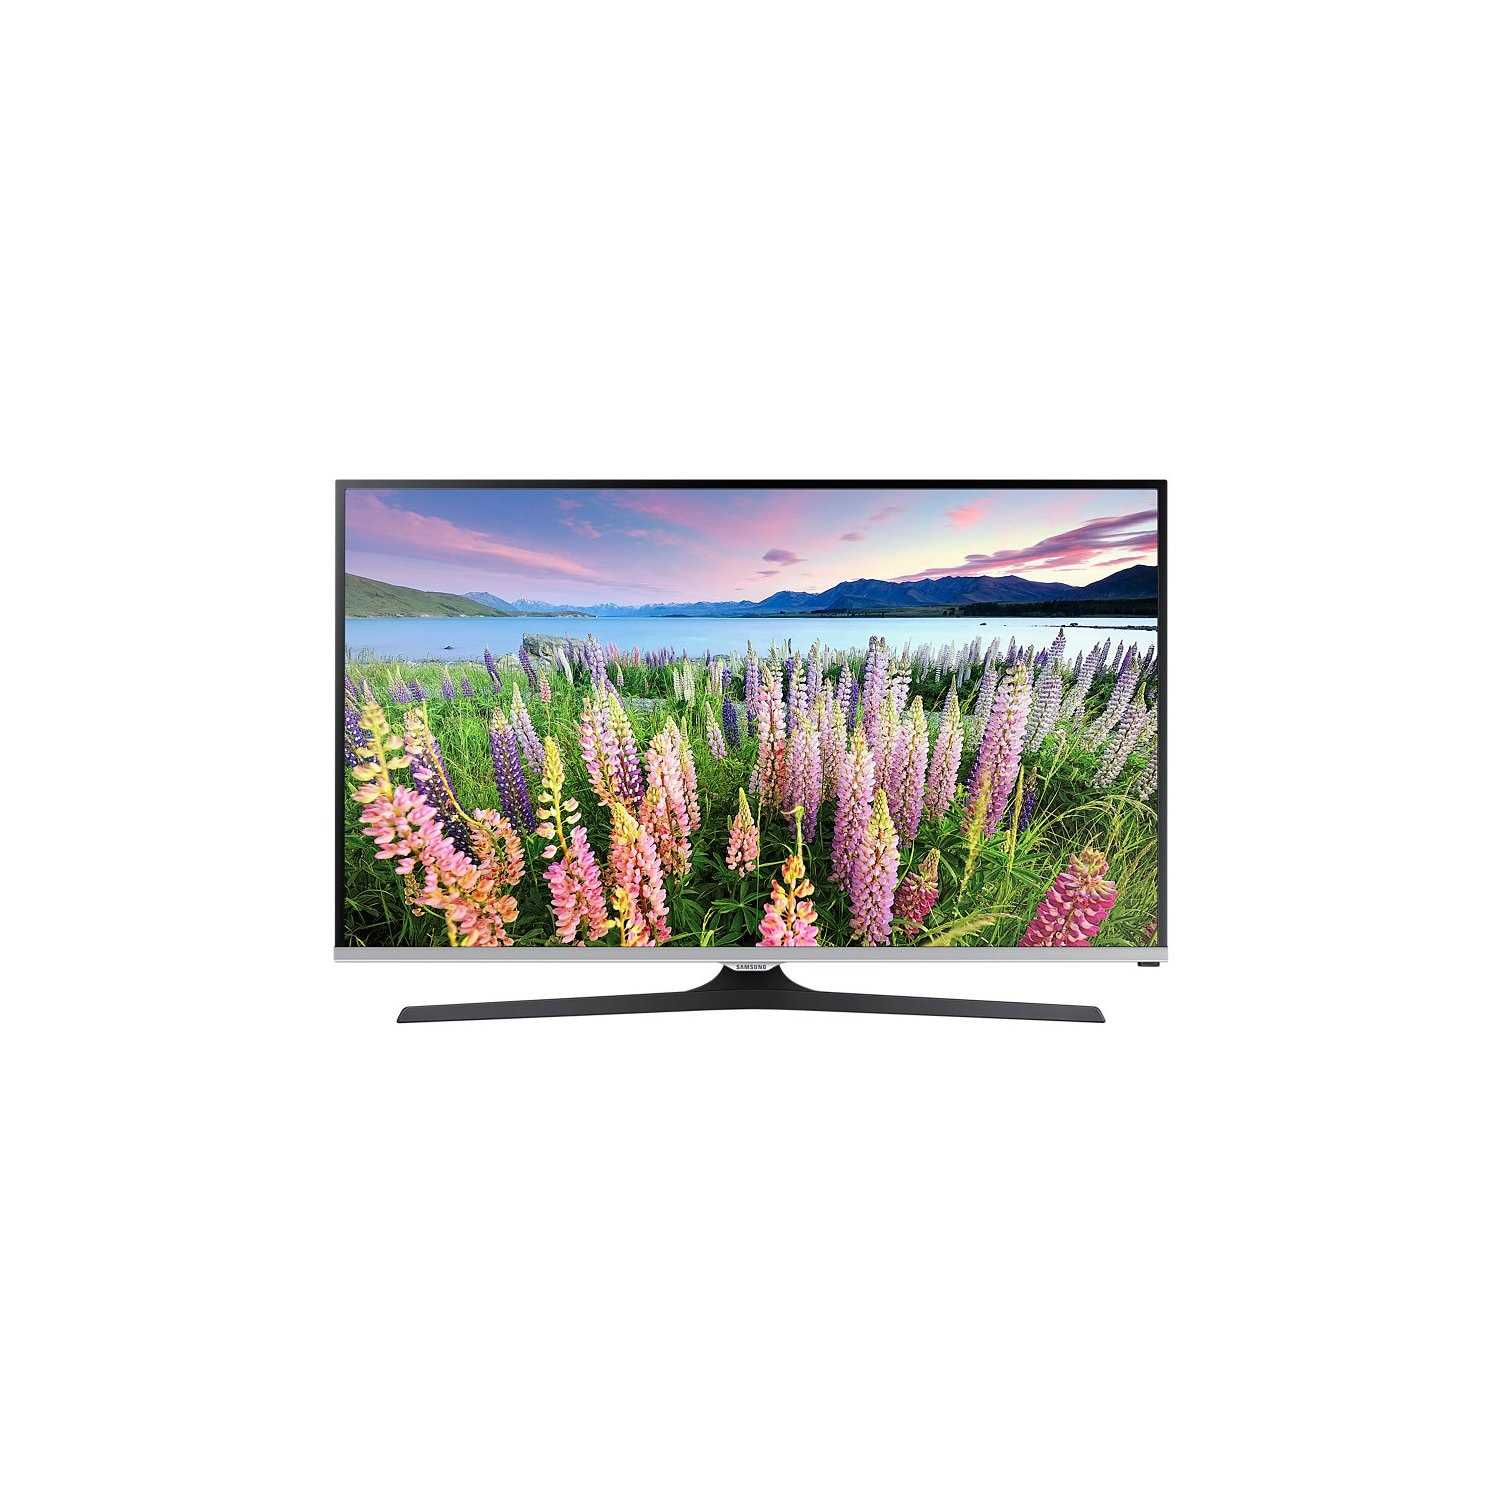 Samsung ue48j5600 - купить , скидки, цена, отзывы, обзор, характеристики - телевизоры